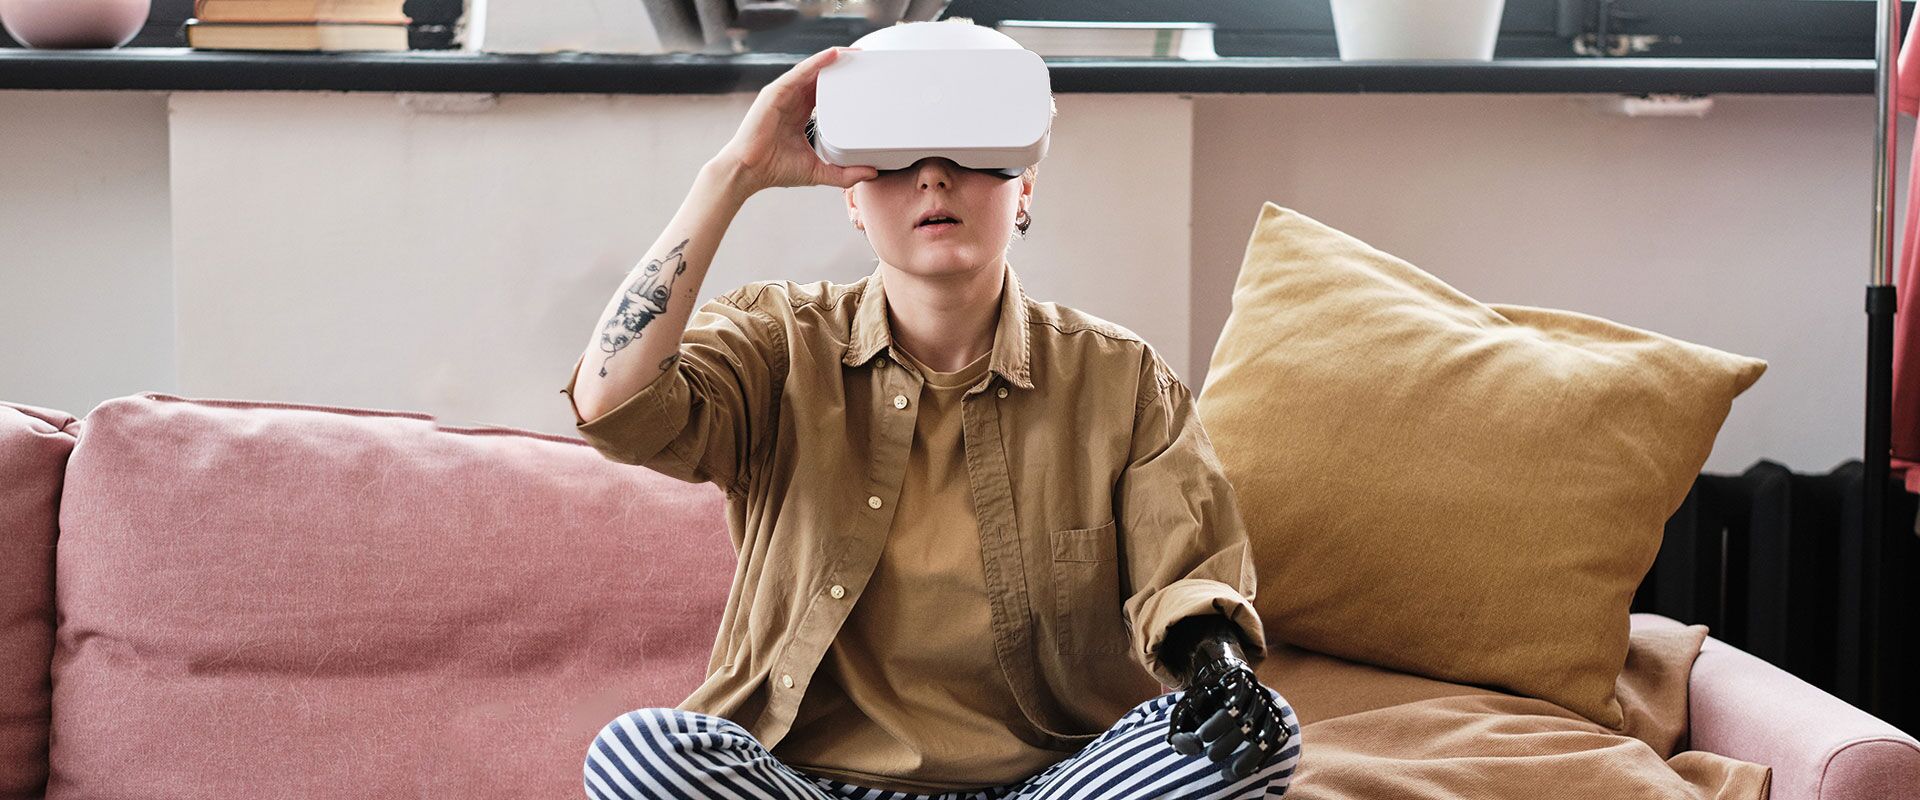 Jugendlicher Mensch mit Armprothese sitzt auf dem Sofa und nutzt eine VR-Brille